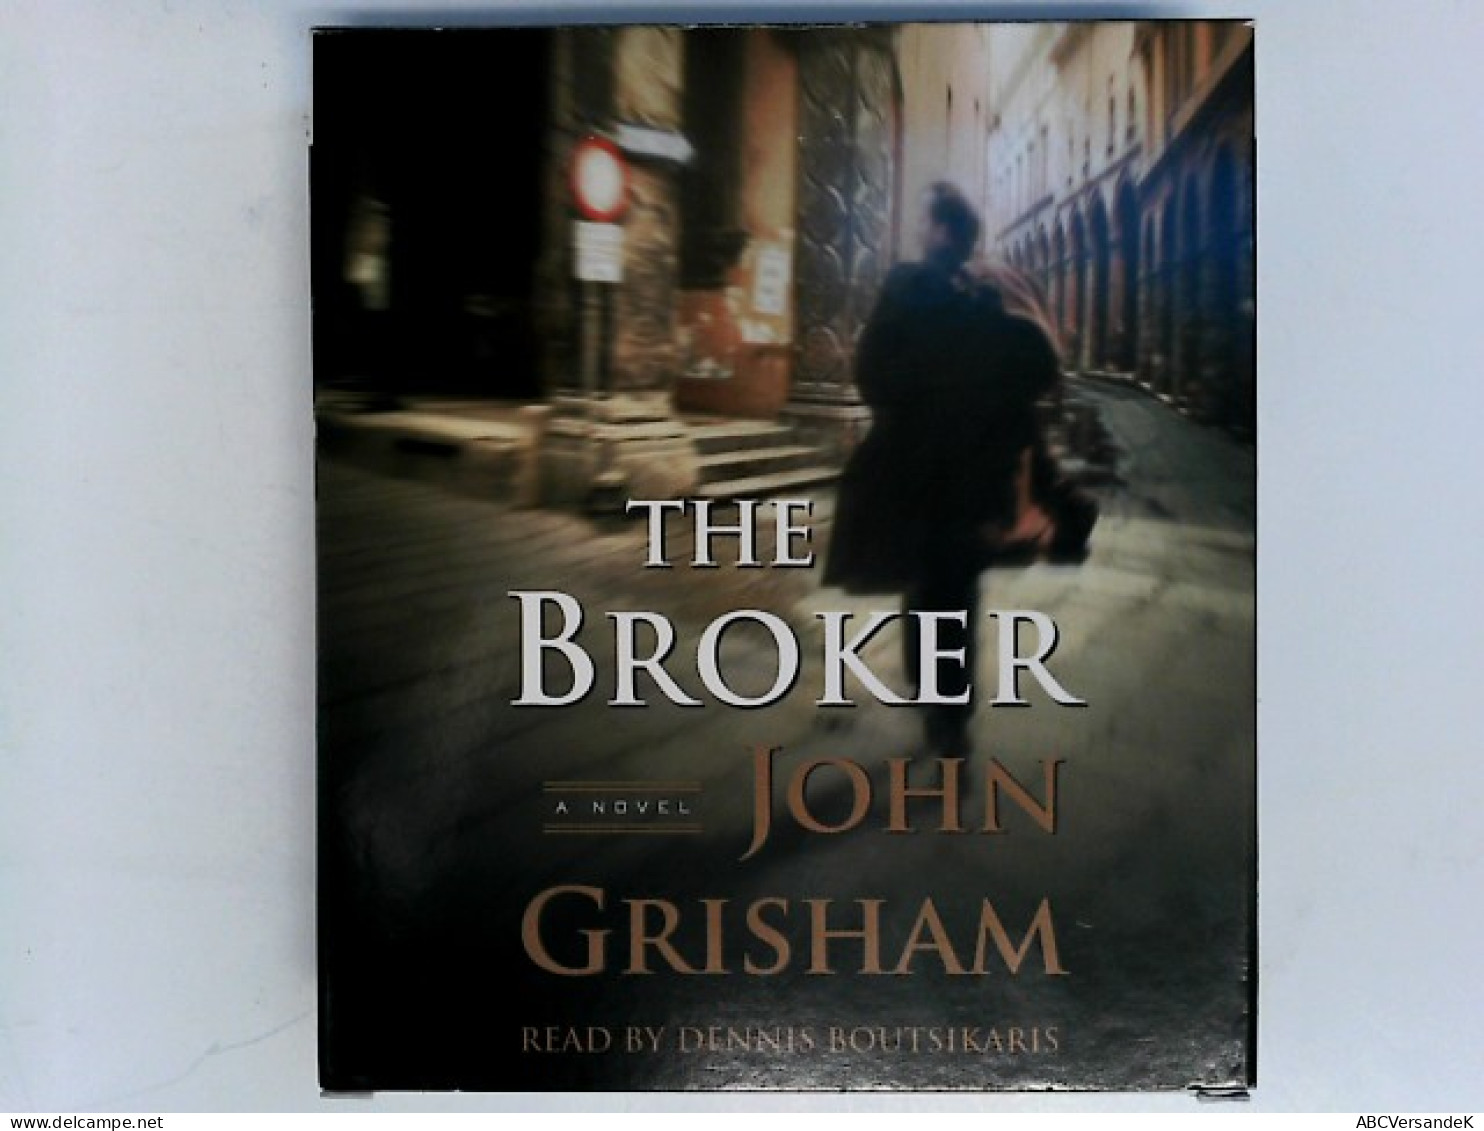 The Broker: A Novel (John Grisham) - CDs